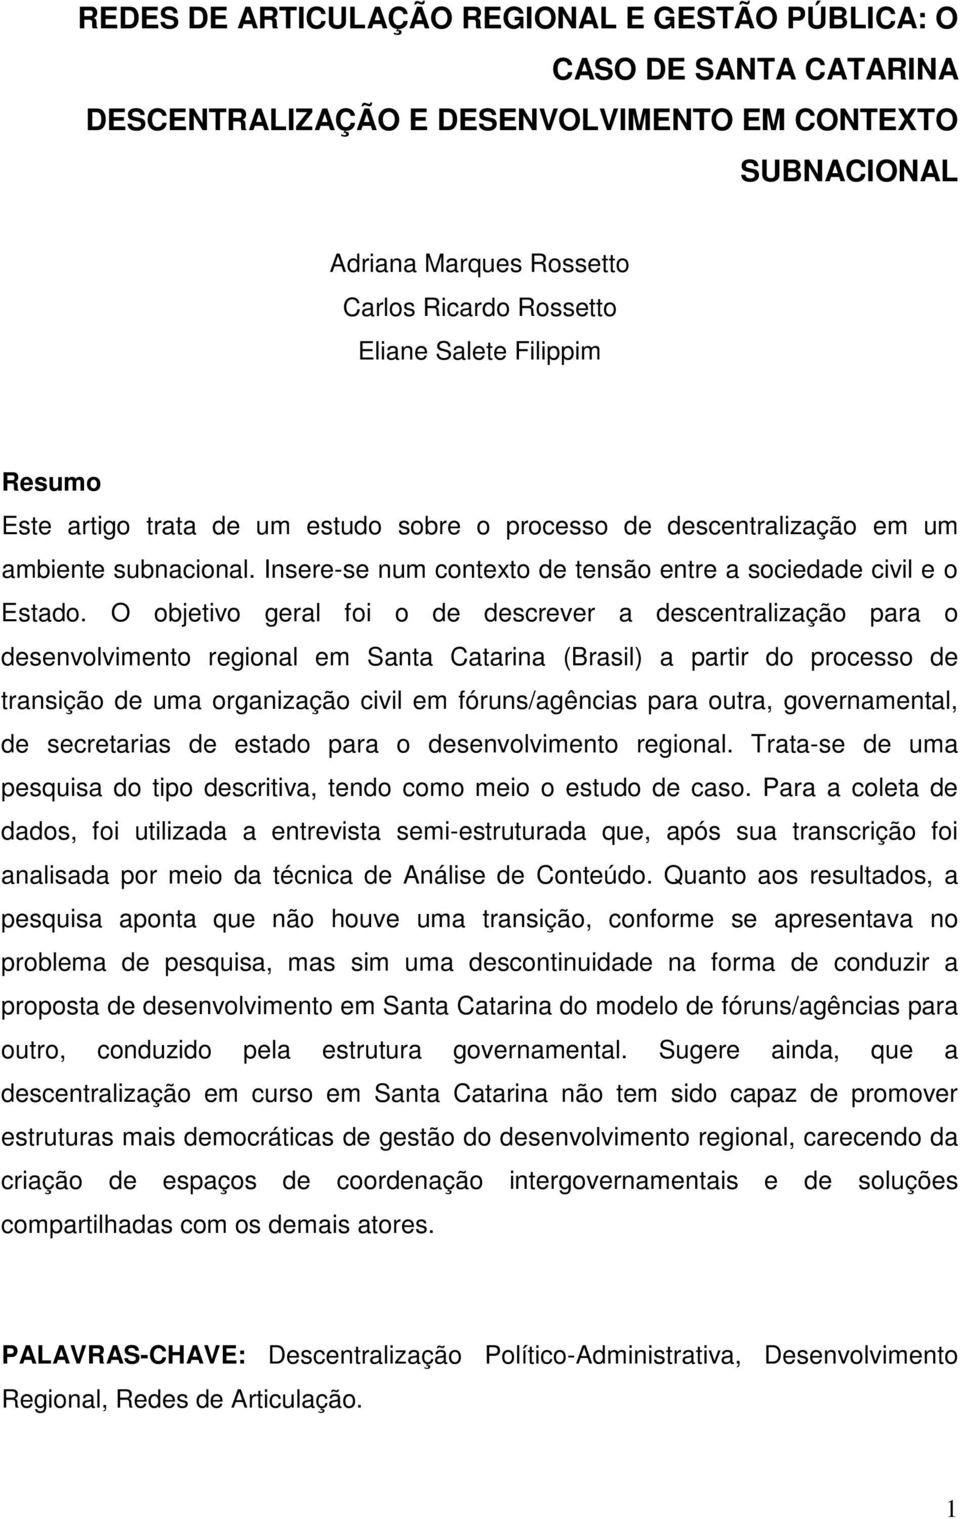 O objetivo geral foi o de descrever a descentralização para o desenvolvimento regional em Santa Catarina (Brasil) a partir do processo de transição de uma organização civil em fóruns/agências para